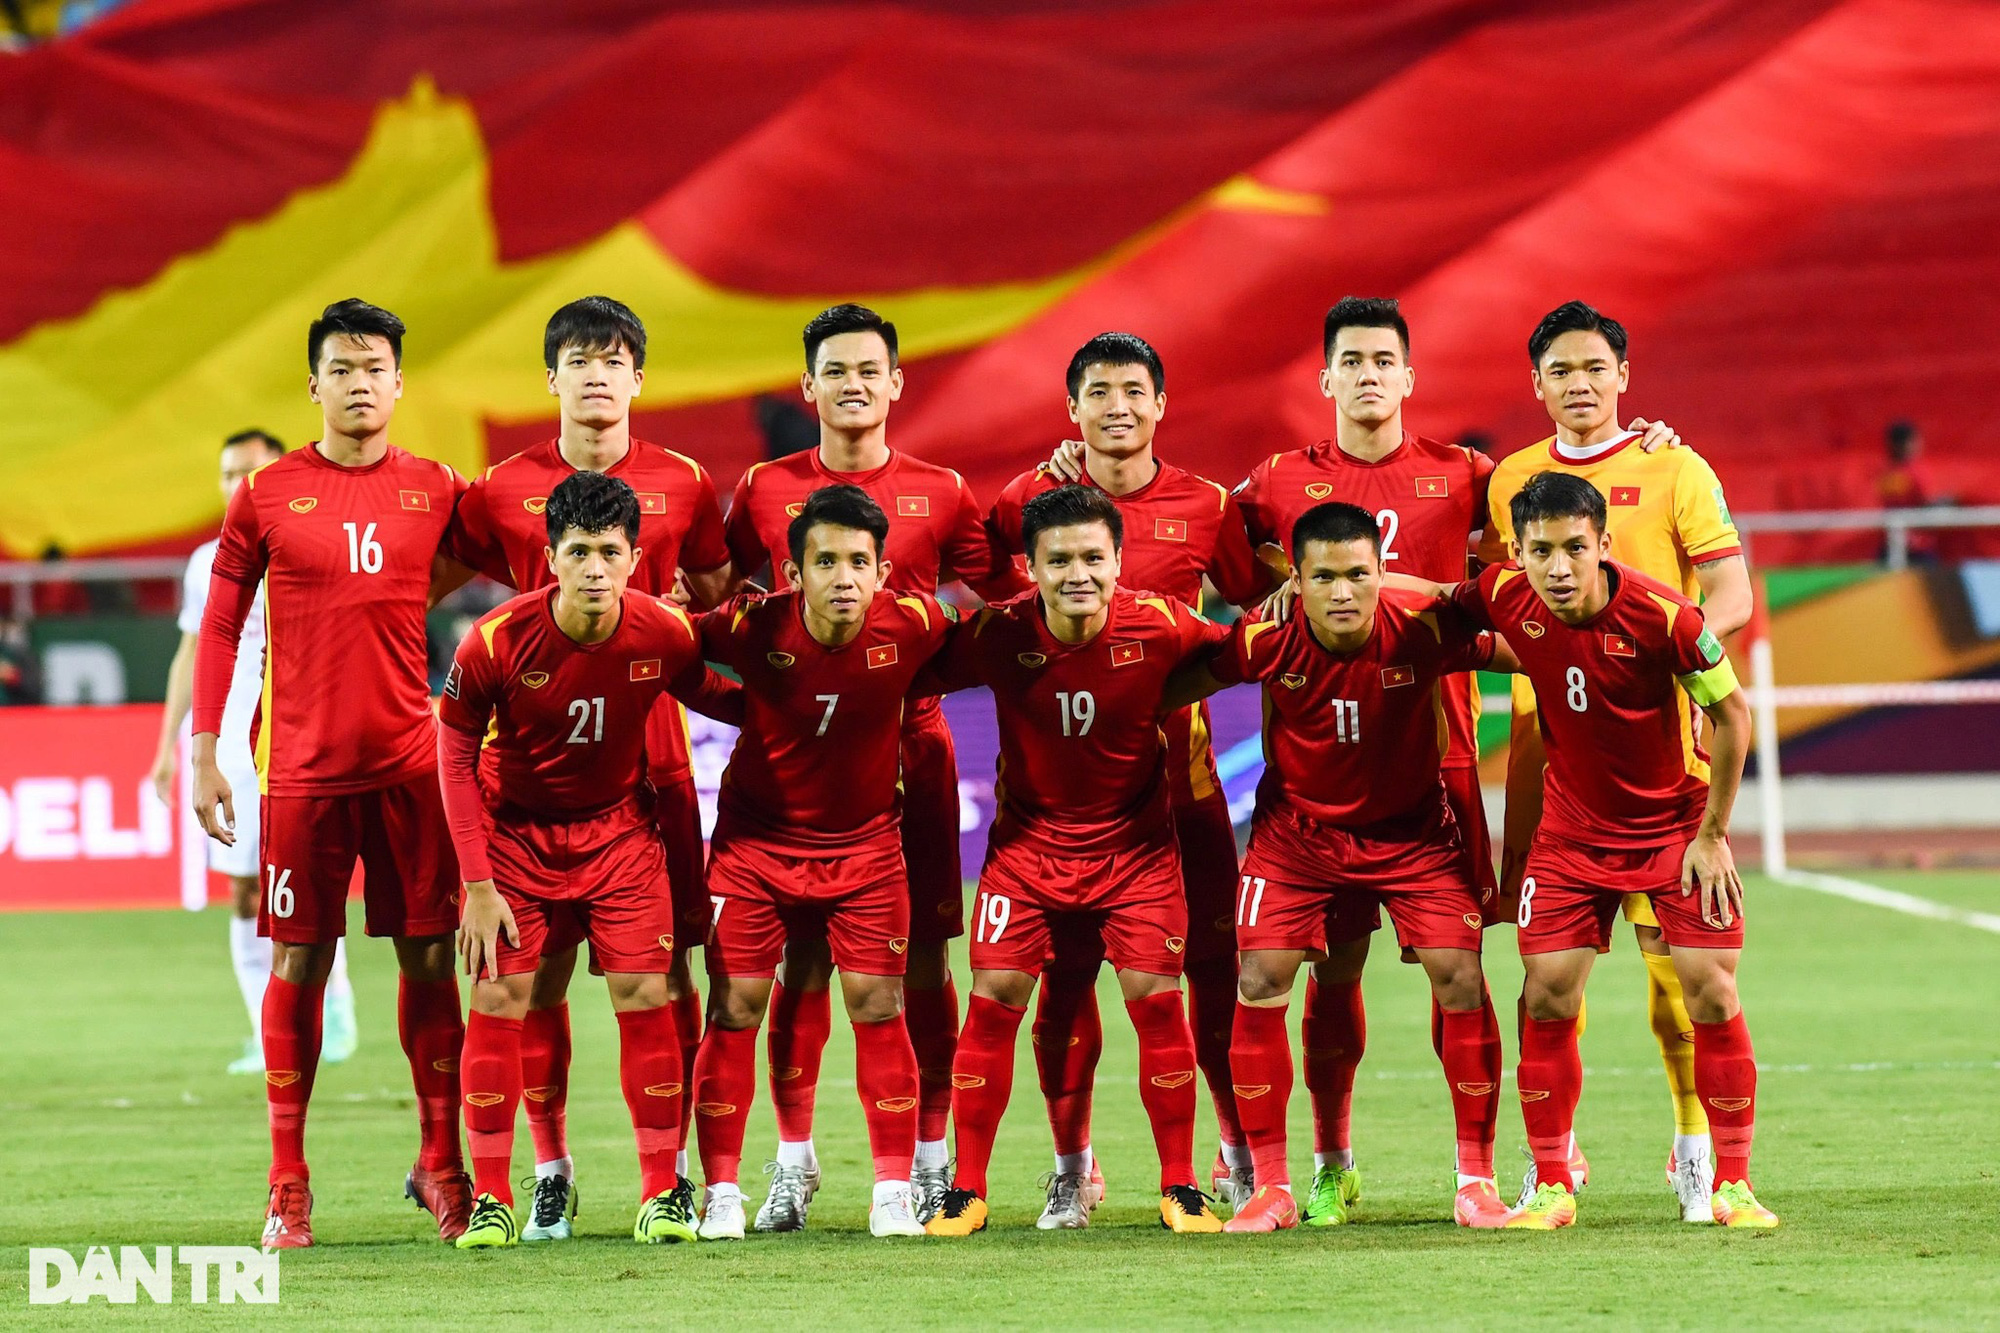 Mùng 1 Tết: Tuyển Việt Nam mừng tuổi dân cả nước bằng trận thắng tưng bừng trước Trung Quốc - Ảnh 1.